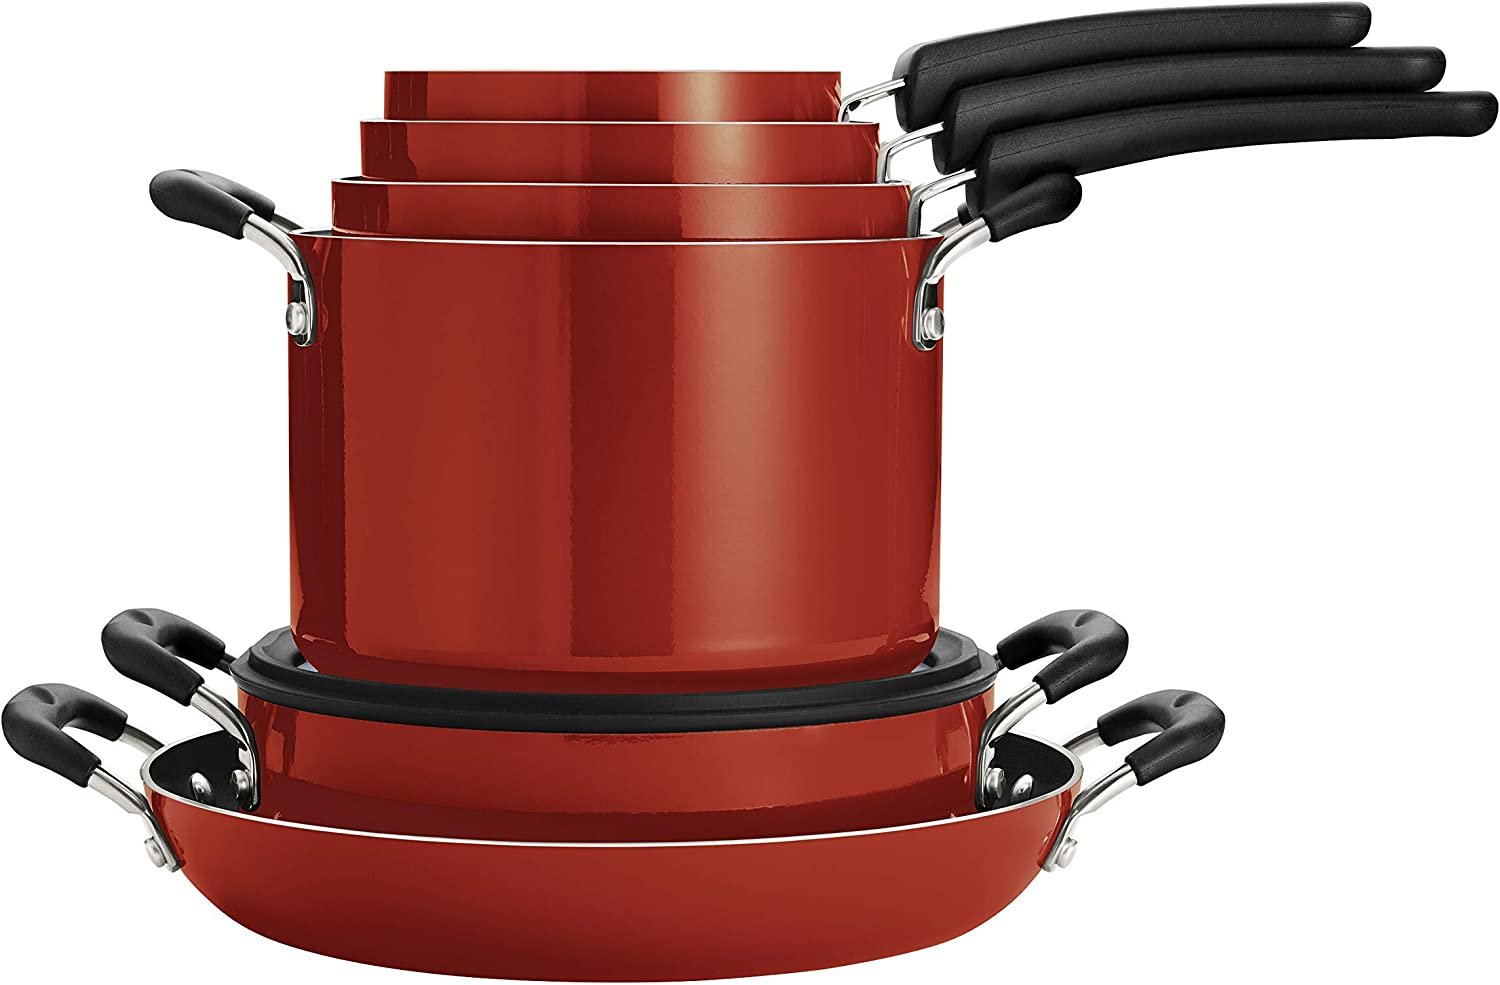 https://stackablepots.com/wp-content/uploads/2022/10/Tramontina-Nesting-11-Pc-Nonstick-Cookware-Set-Red-Main.jpg